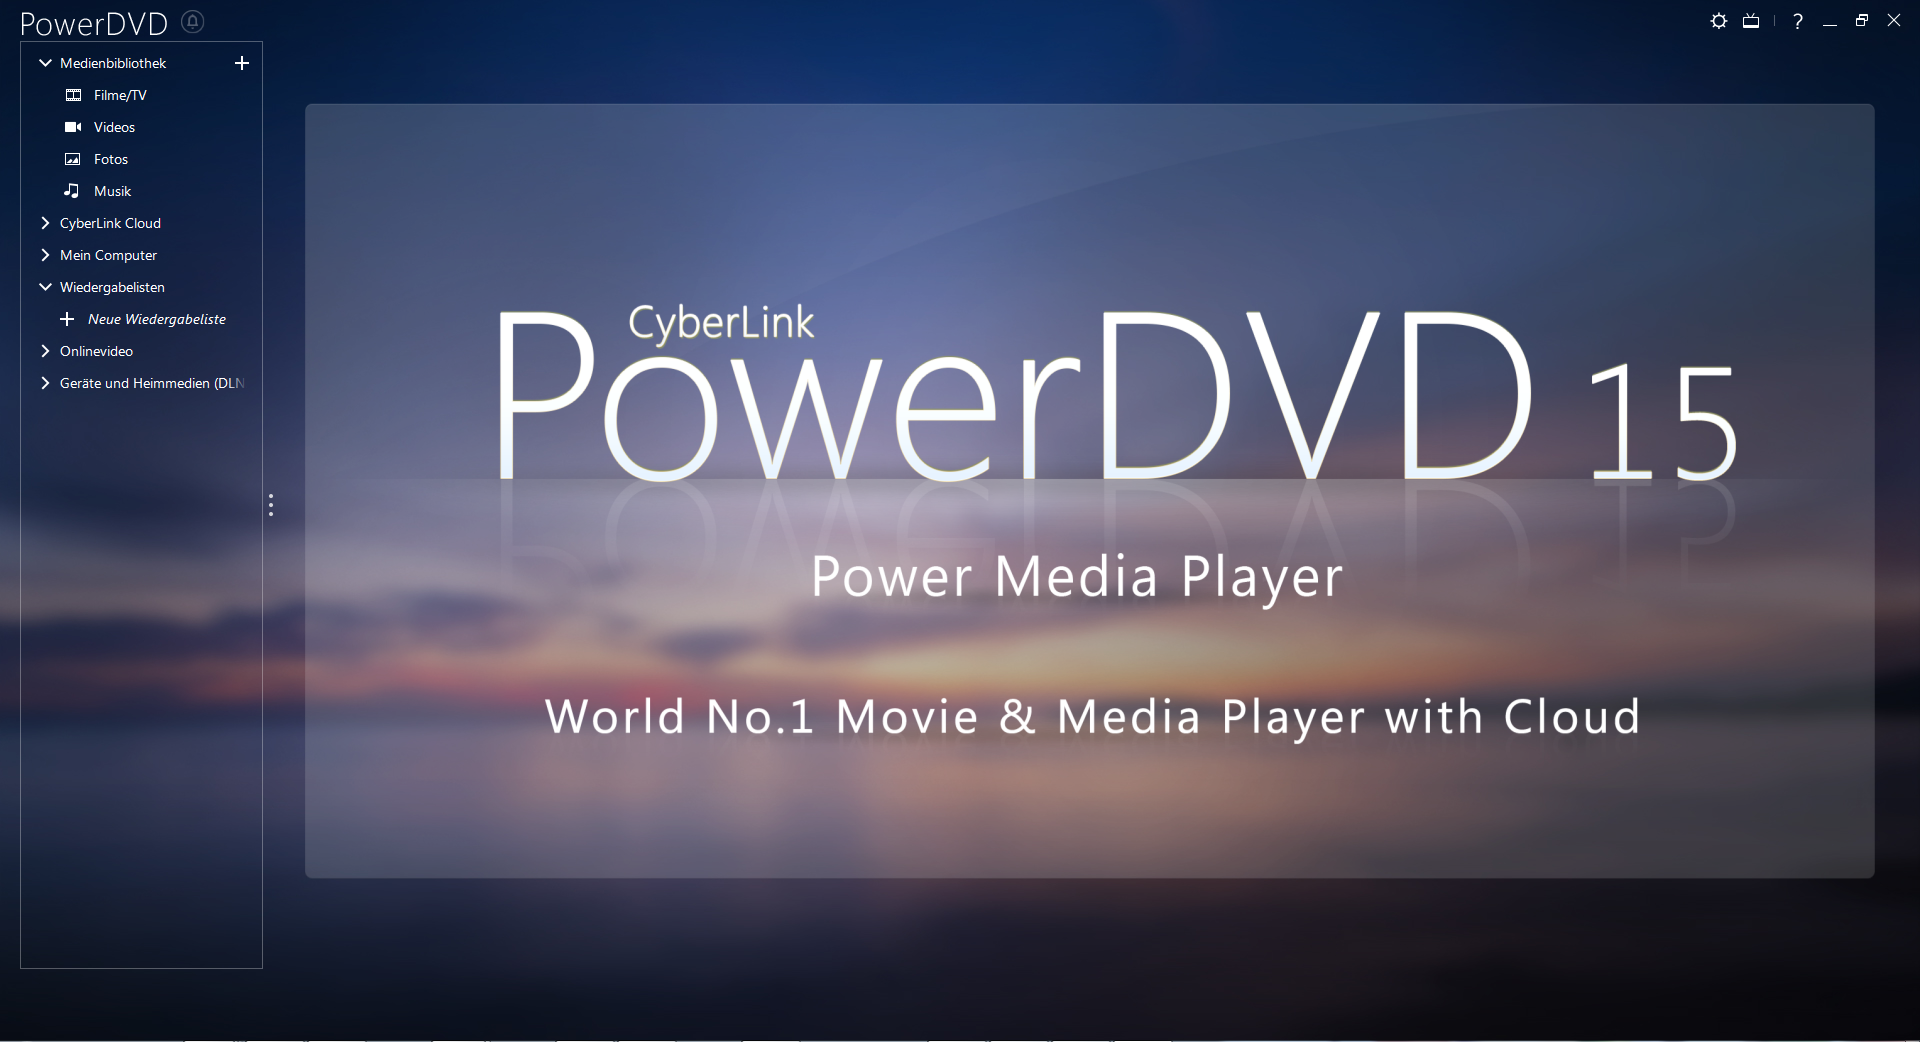 powerdvd 15 review